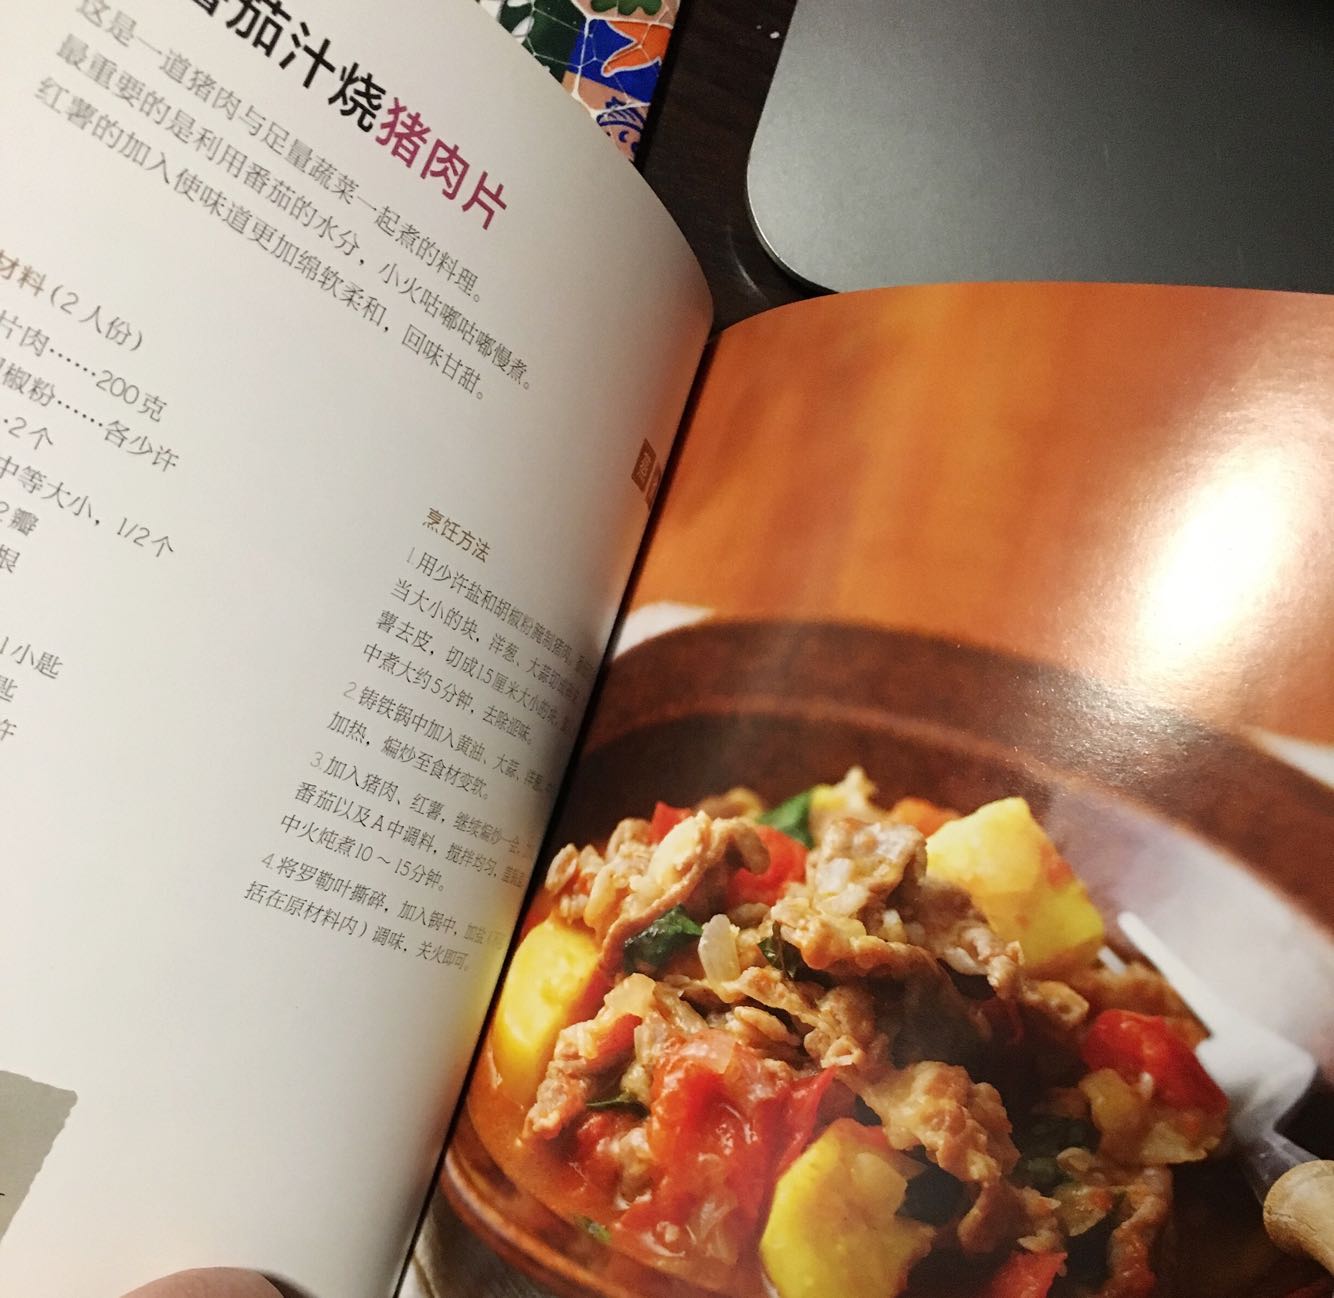 这是一本为Staub而作的美食书，很多日本家常风味的菜，不过需要专门去买一些特定的日本调料或者当地食材才能做得地道或者说接近作者的原味。很多菜不难，贵在铸铁锅能最好地保留食材的原味。推荐大家试试。要说不足呢，希望作者能再推荐一些用铸铁锅搭配烤箱而做的美食。